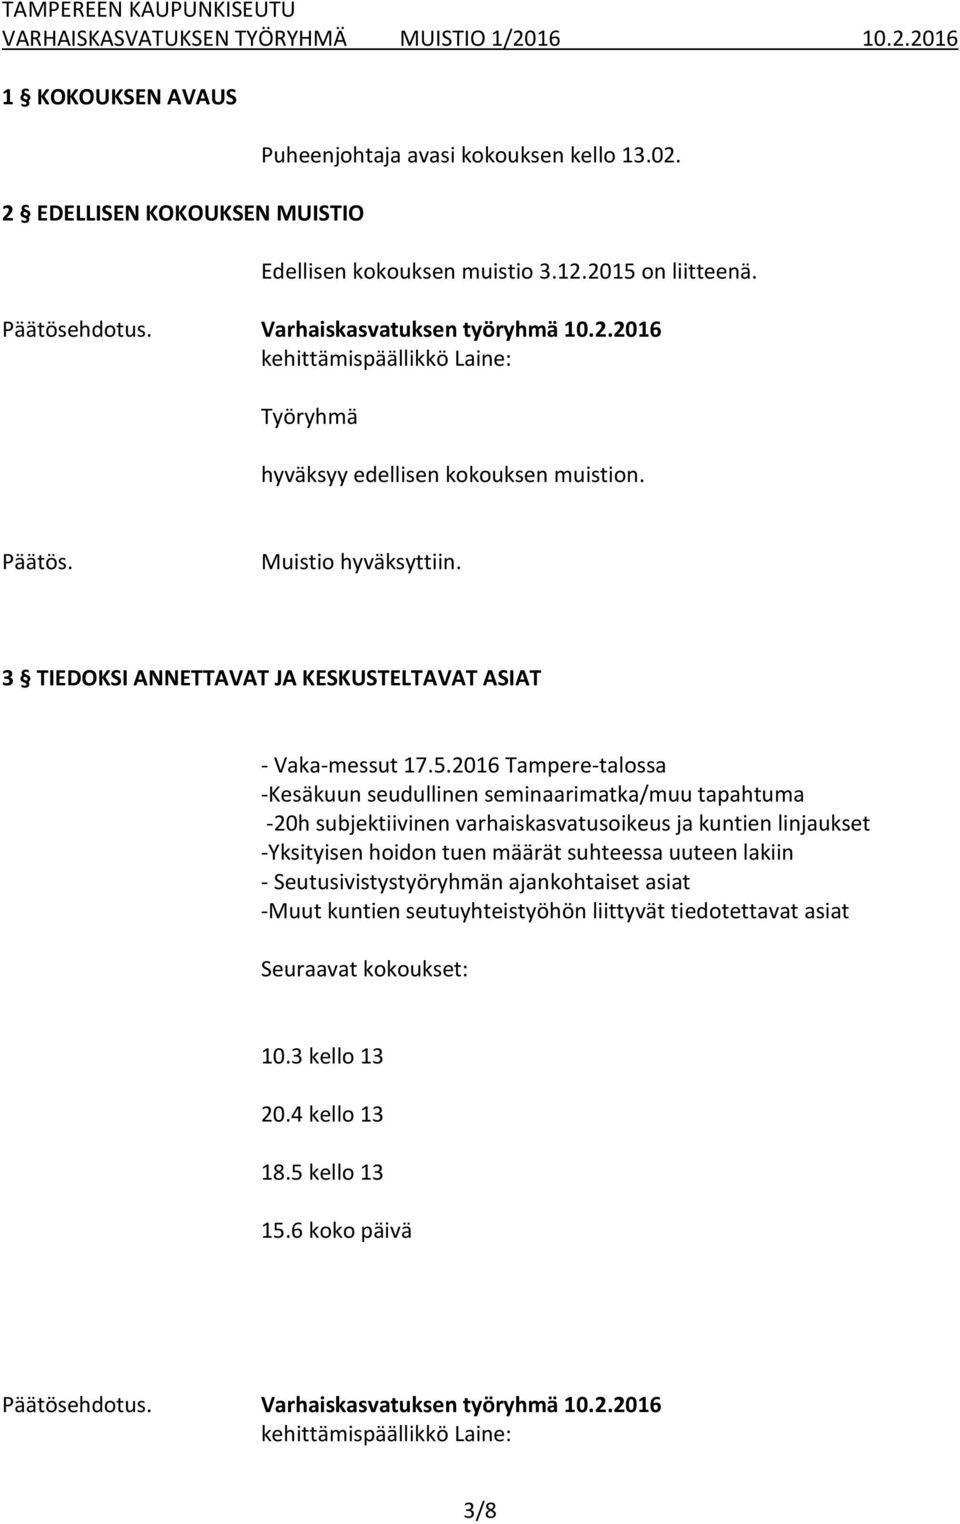 2016 Tampere-talossa -Kesäkuun seudullinen seminaarimatka/muu tapahtuma -20h subjektiivinen varhaiskasvatusoikeus ja kuntien linjaukset -Yksityisen hoidon tuen